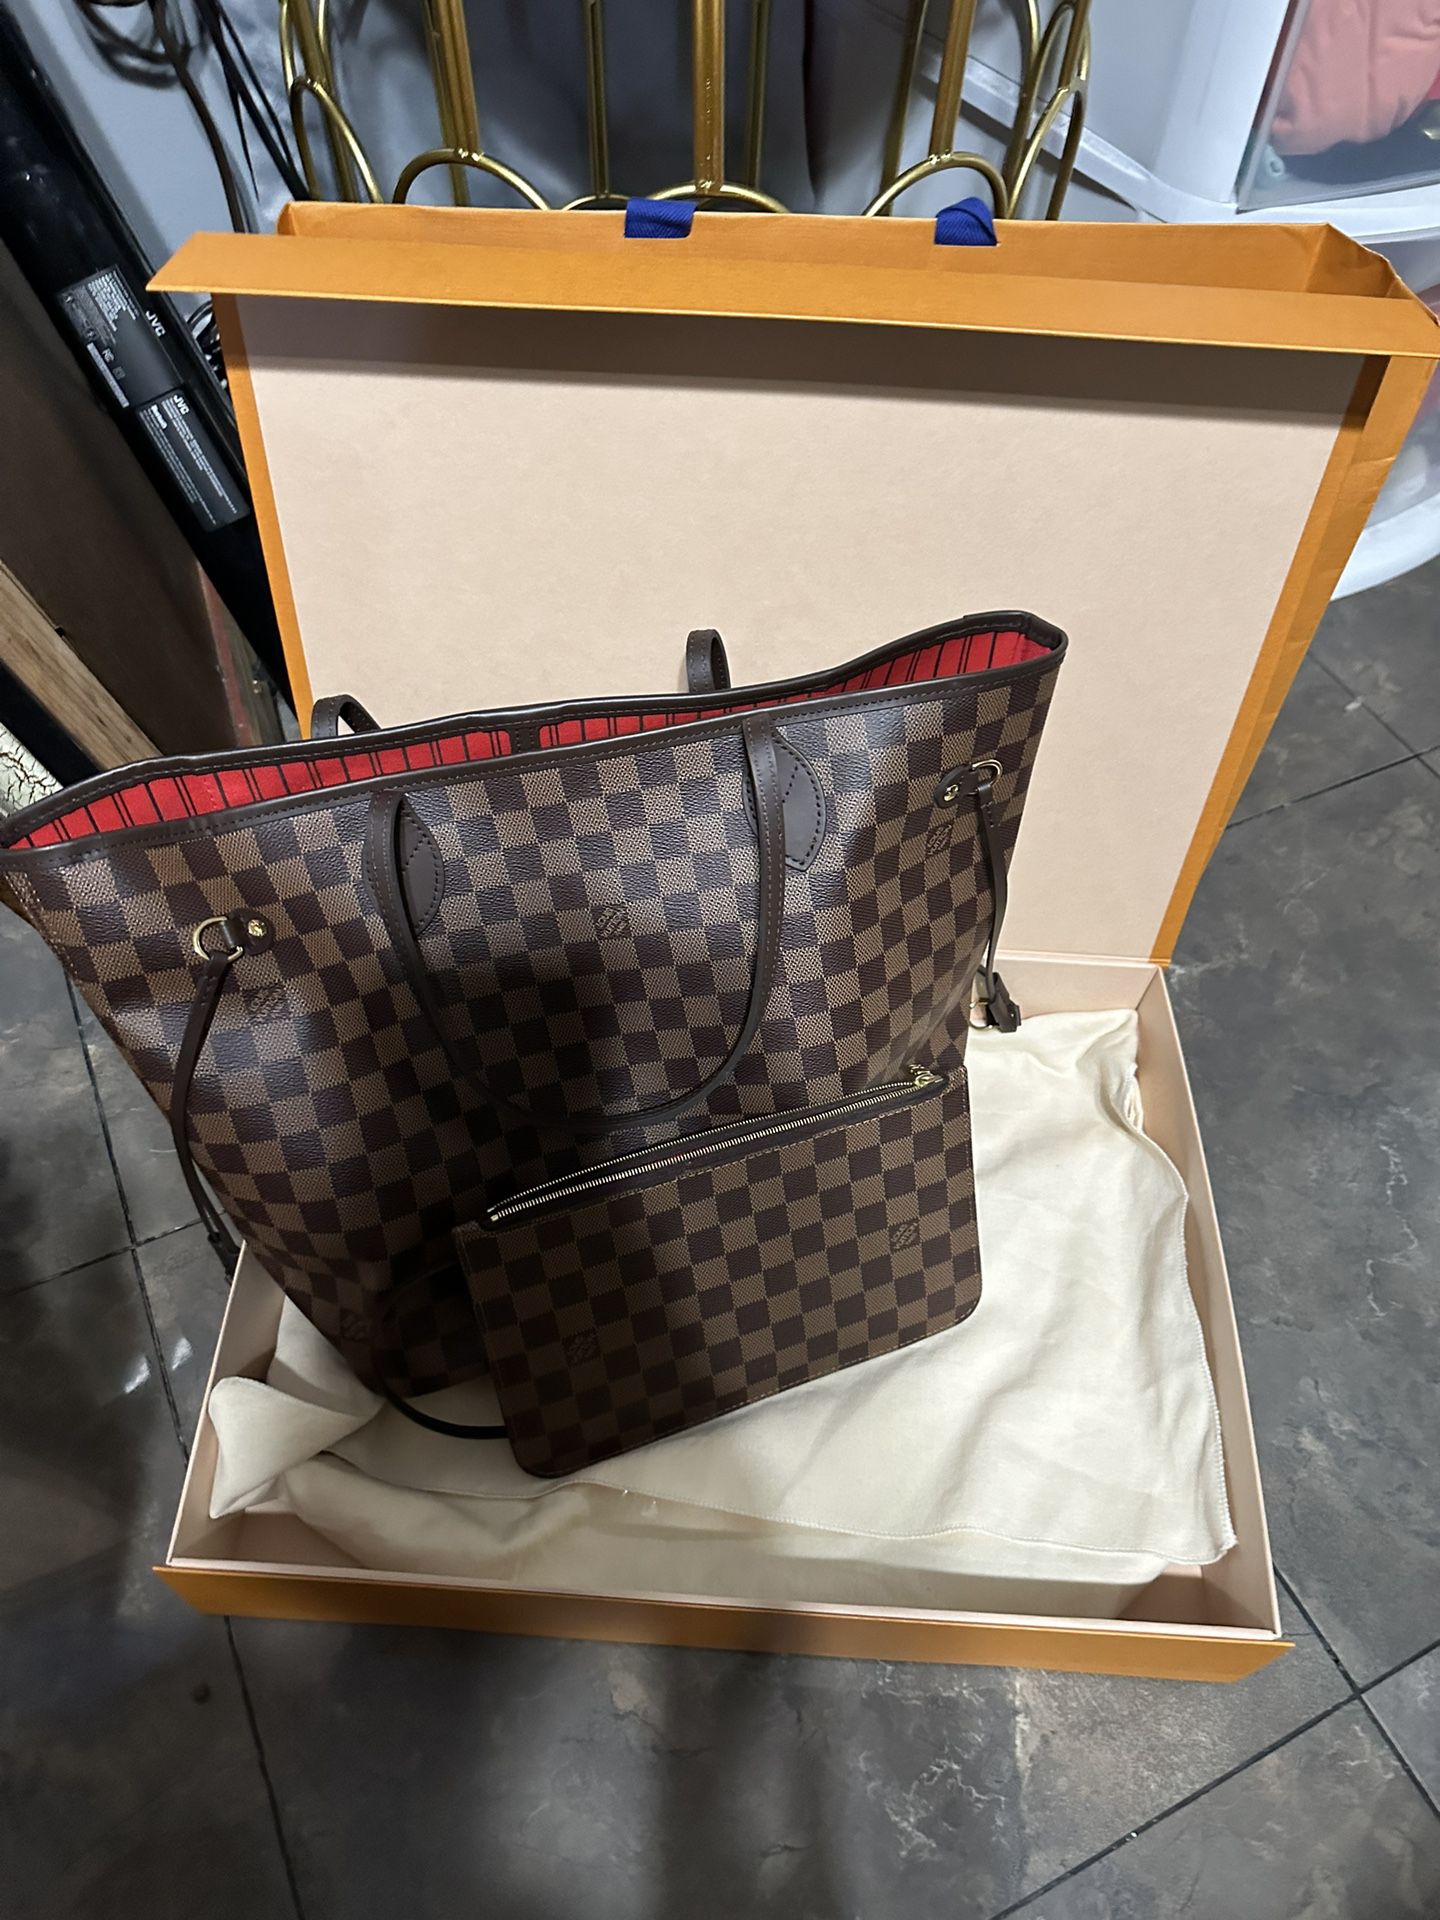 Lv Bag for Sale in Santa Ana, CA - OfferUp